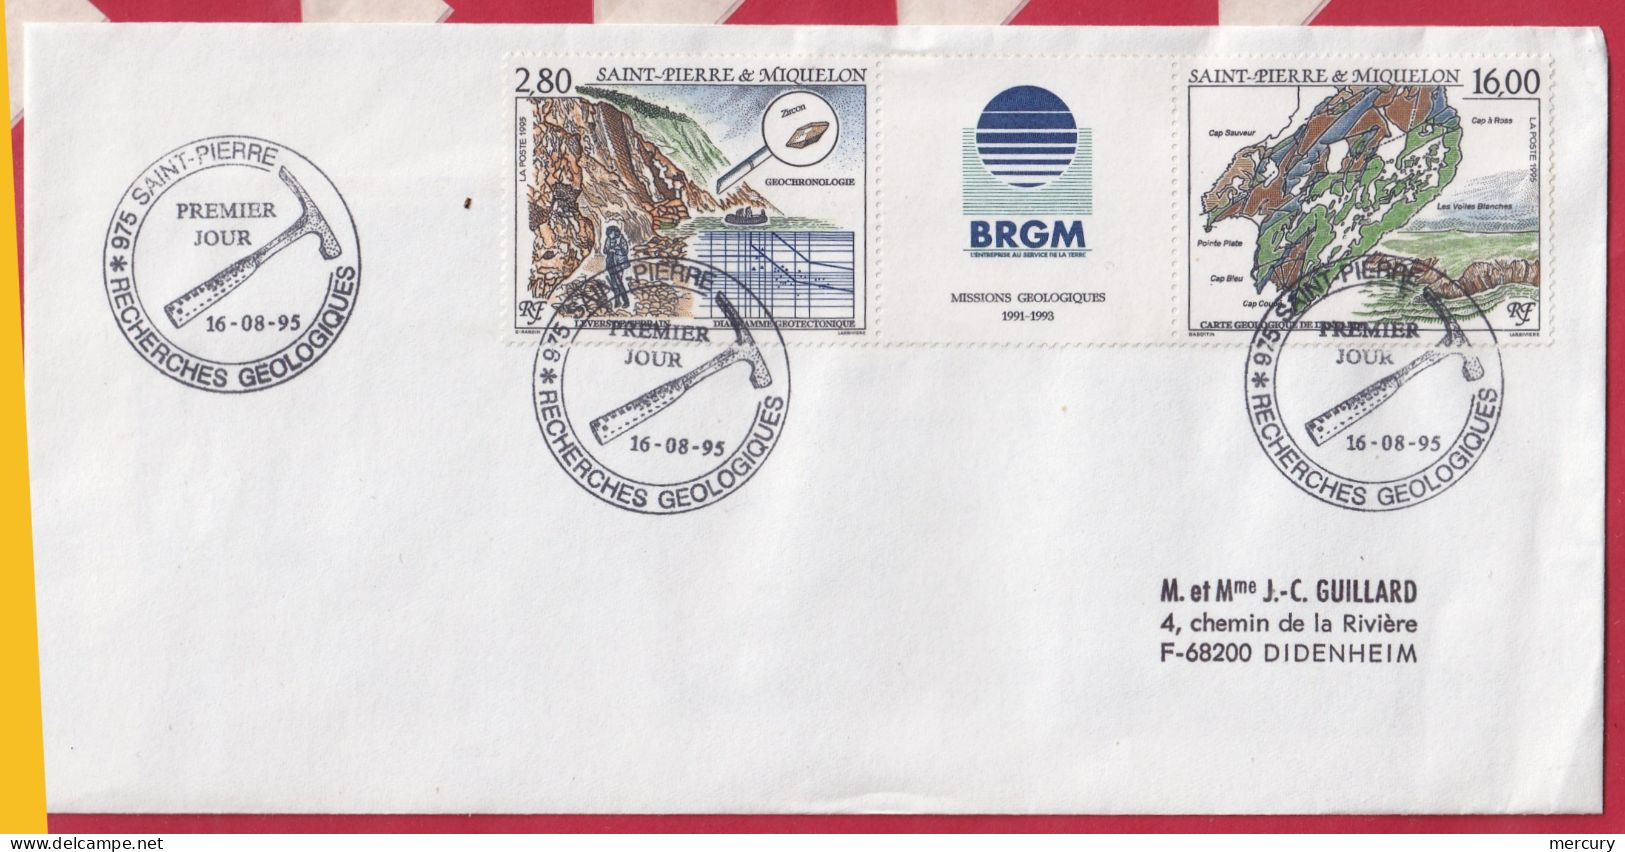 SPM _ Bon lot de 59 lettres de 1992/95 - 19 scans